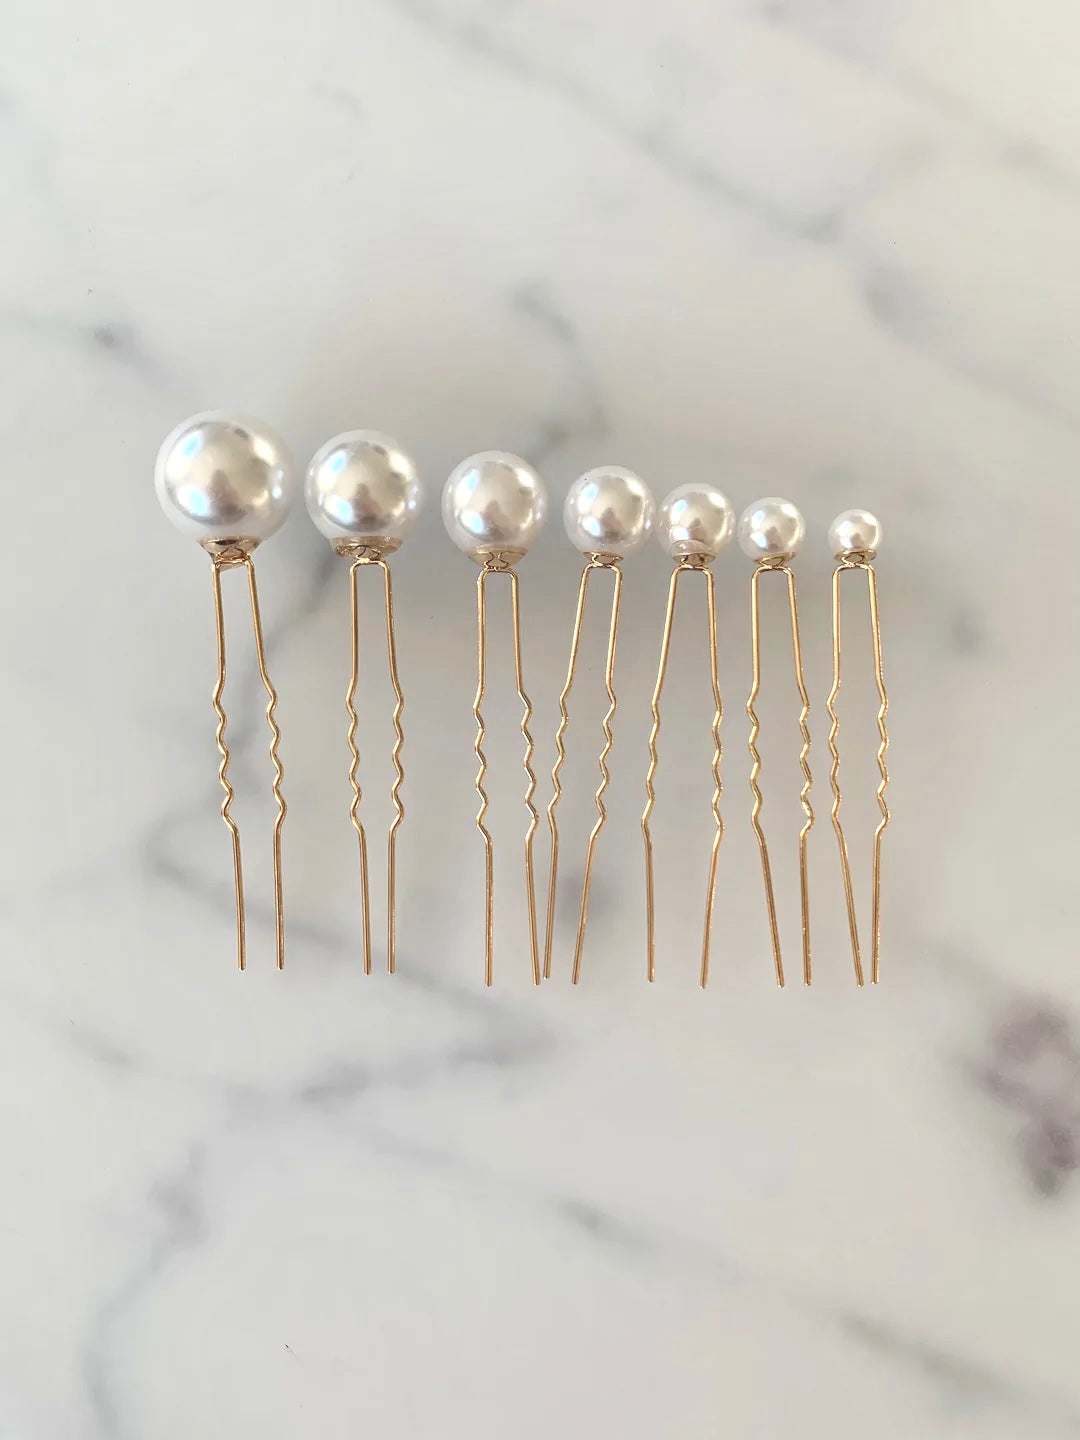 Mixa själv - hårnål med pärlor guld 8-20 mm